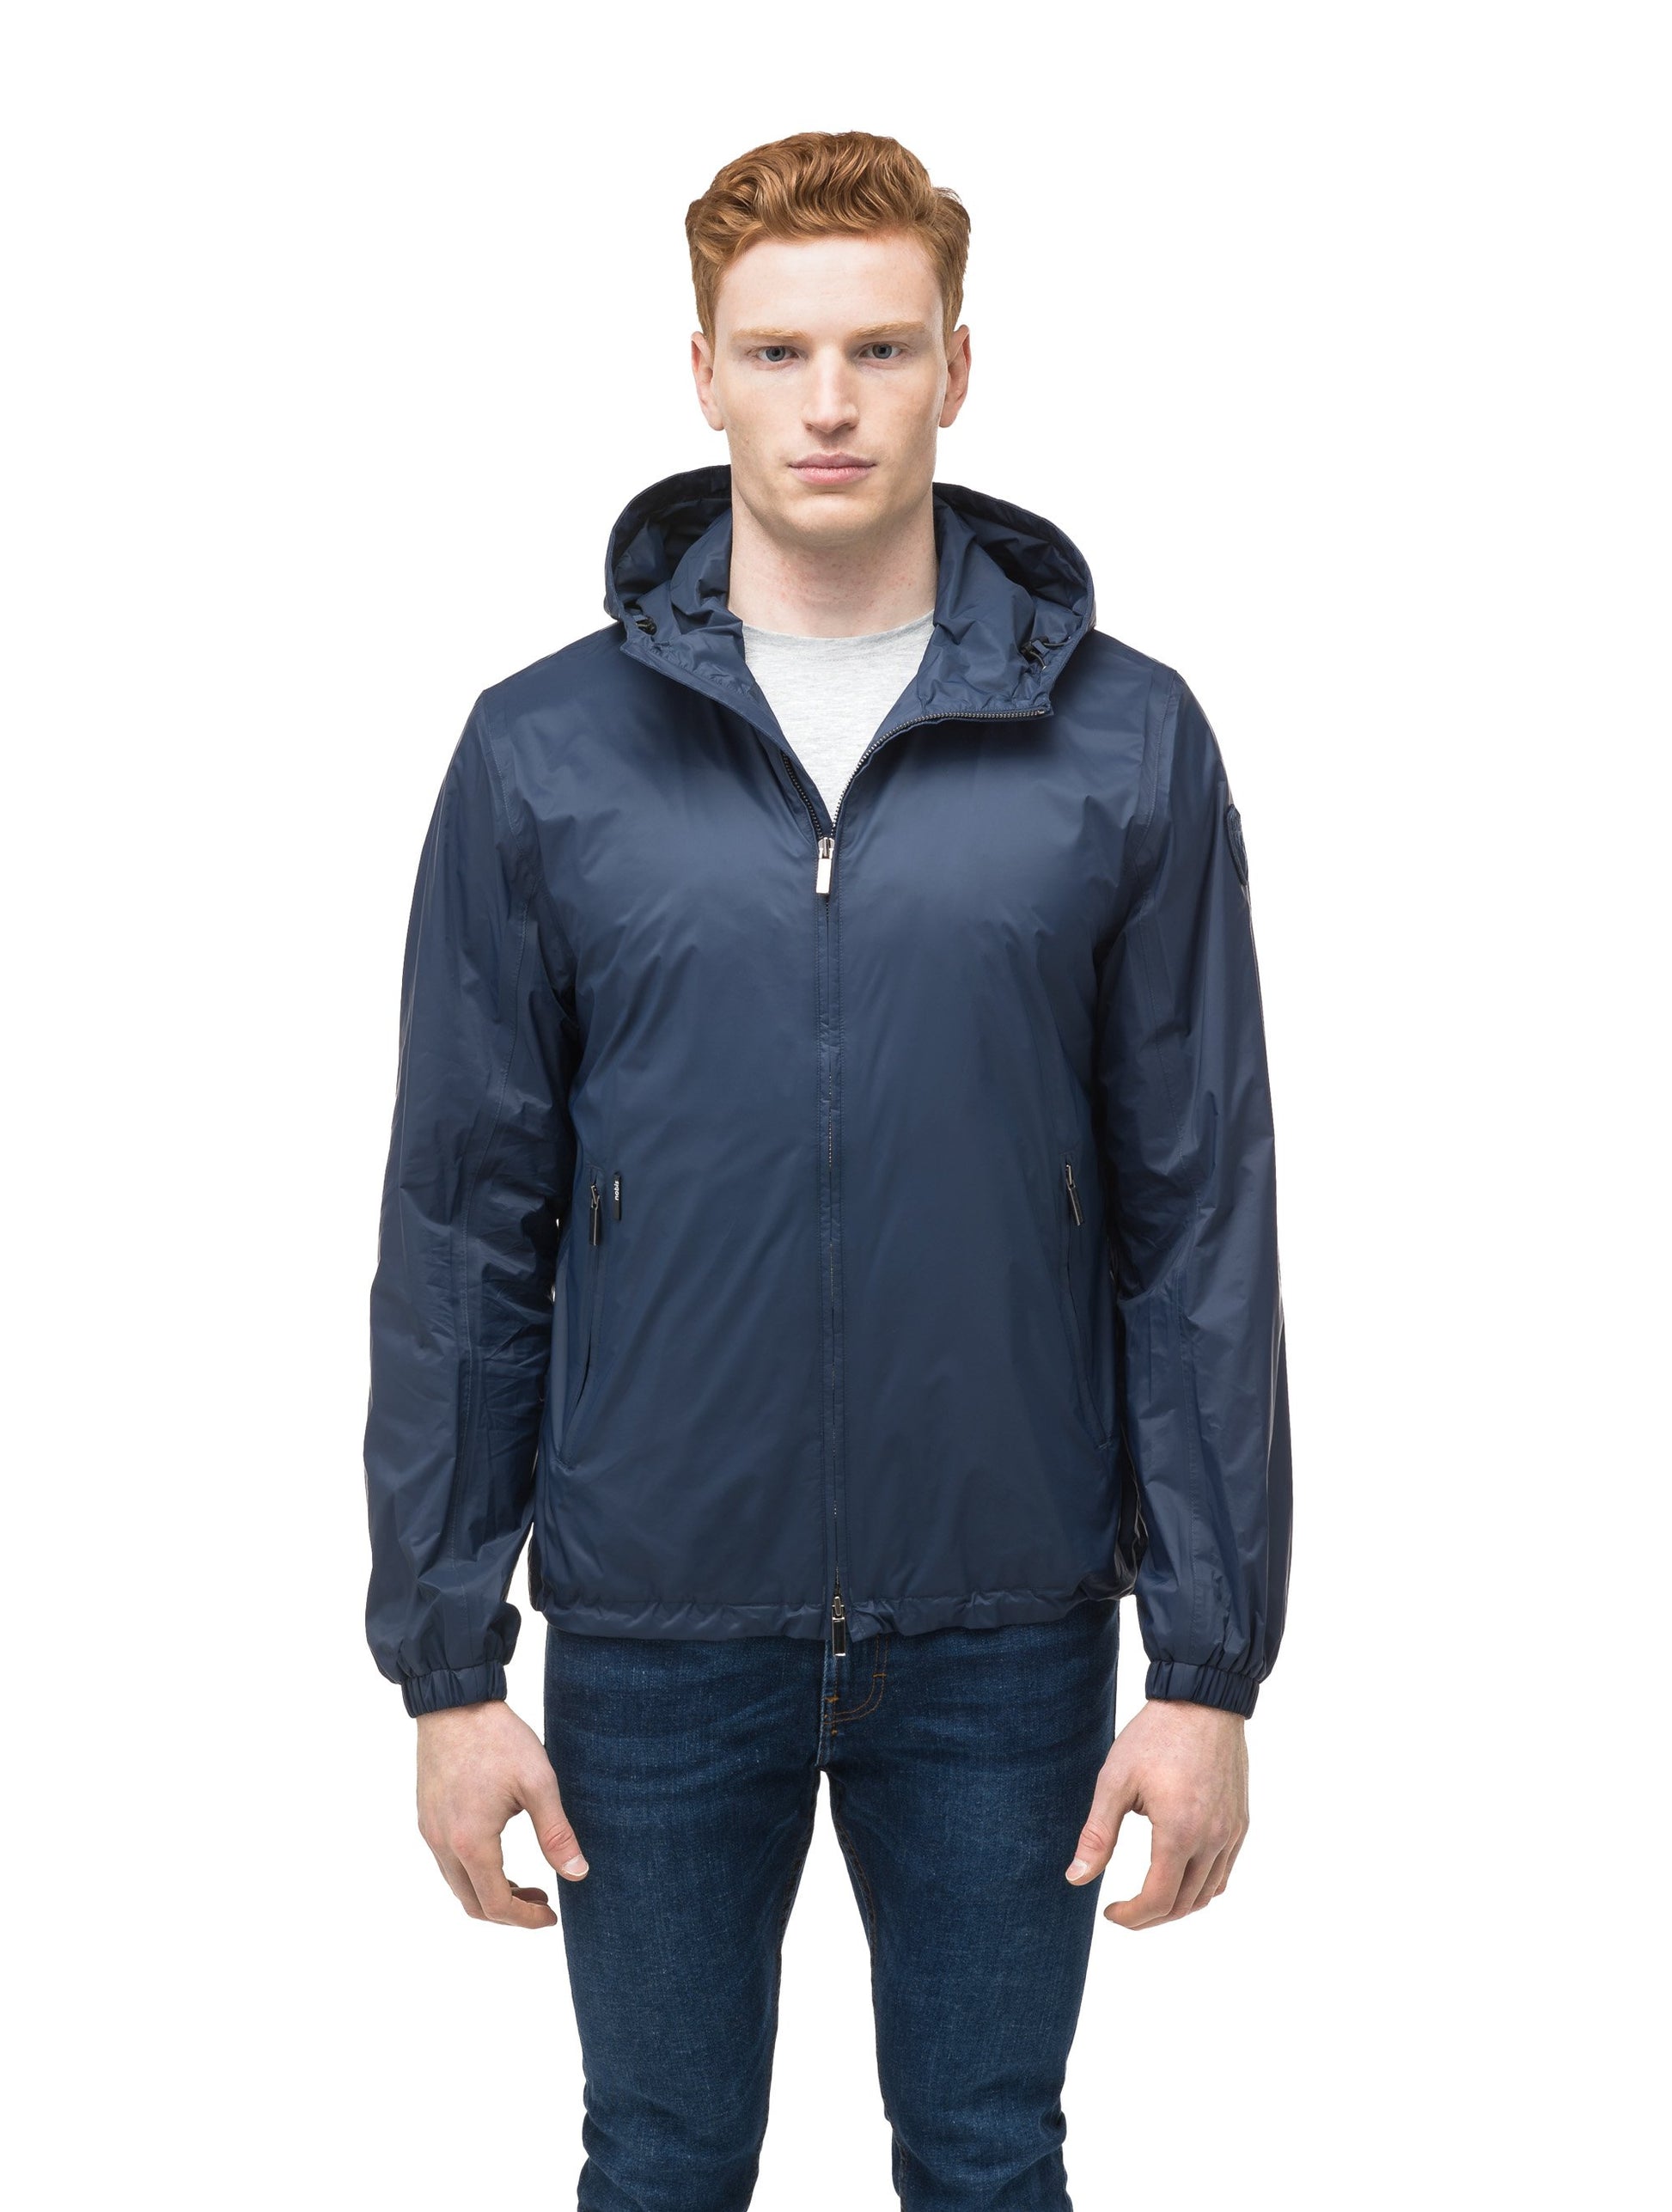 Men's waist length zip up hooded windproof jacket in Marine